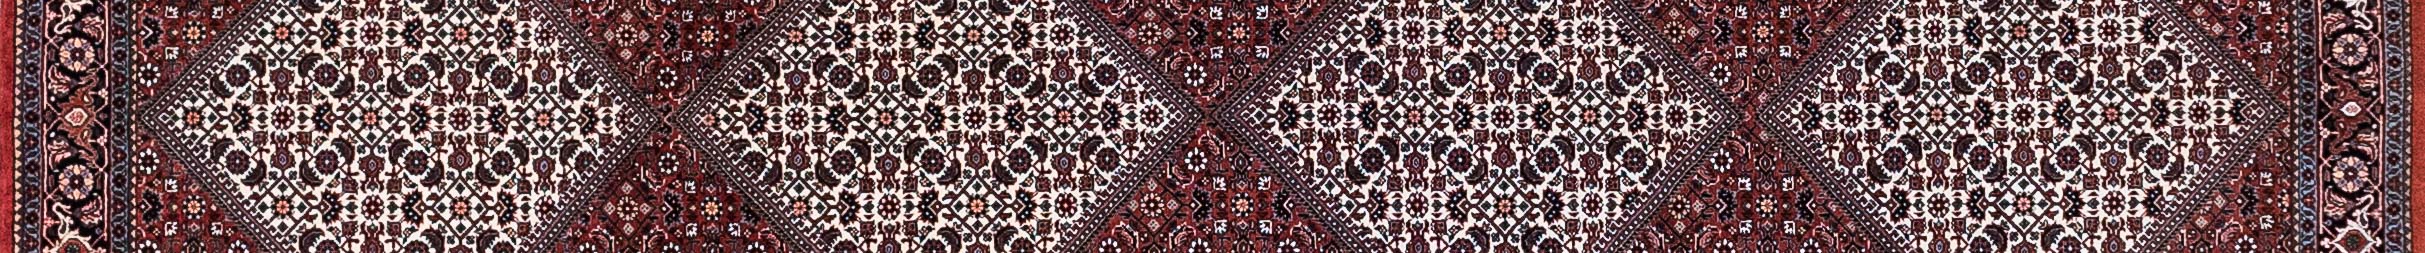 Bidjar Persian Carpet Rug N1Carpet Canada Montreal Tapis Persan 2590